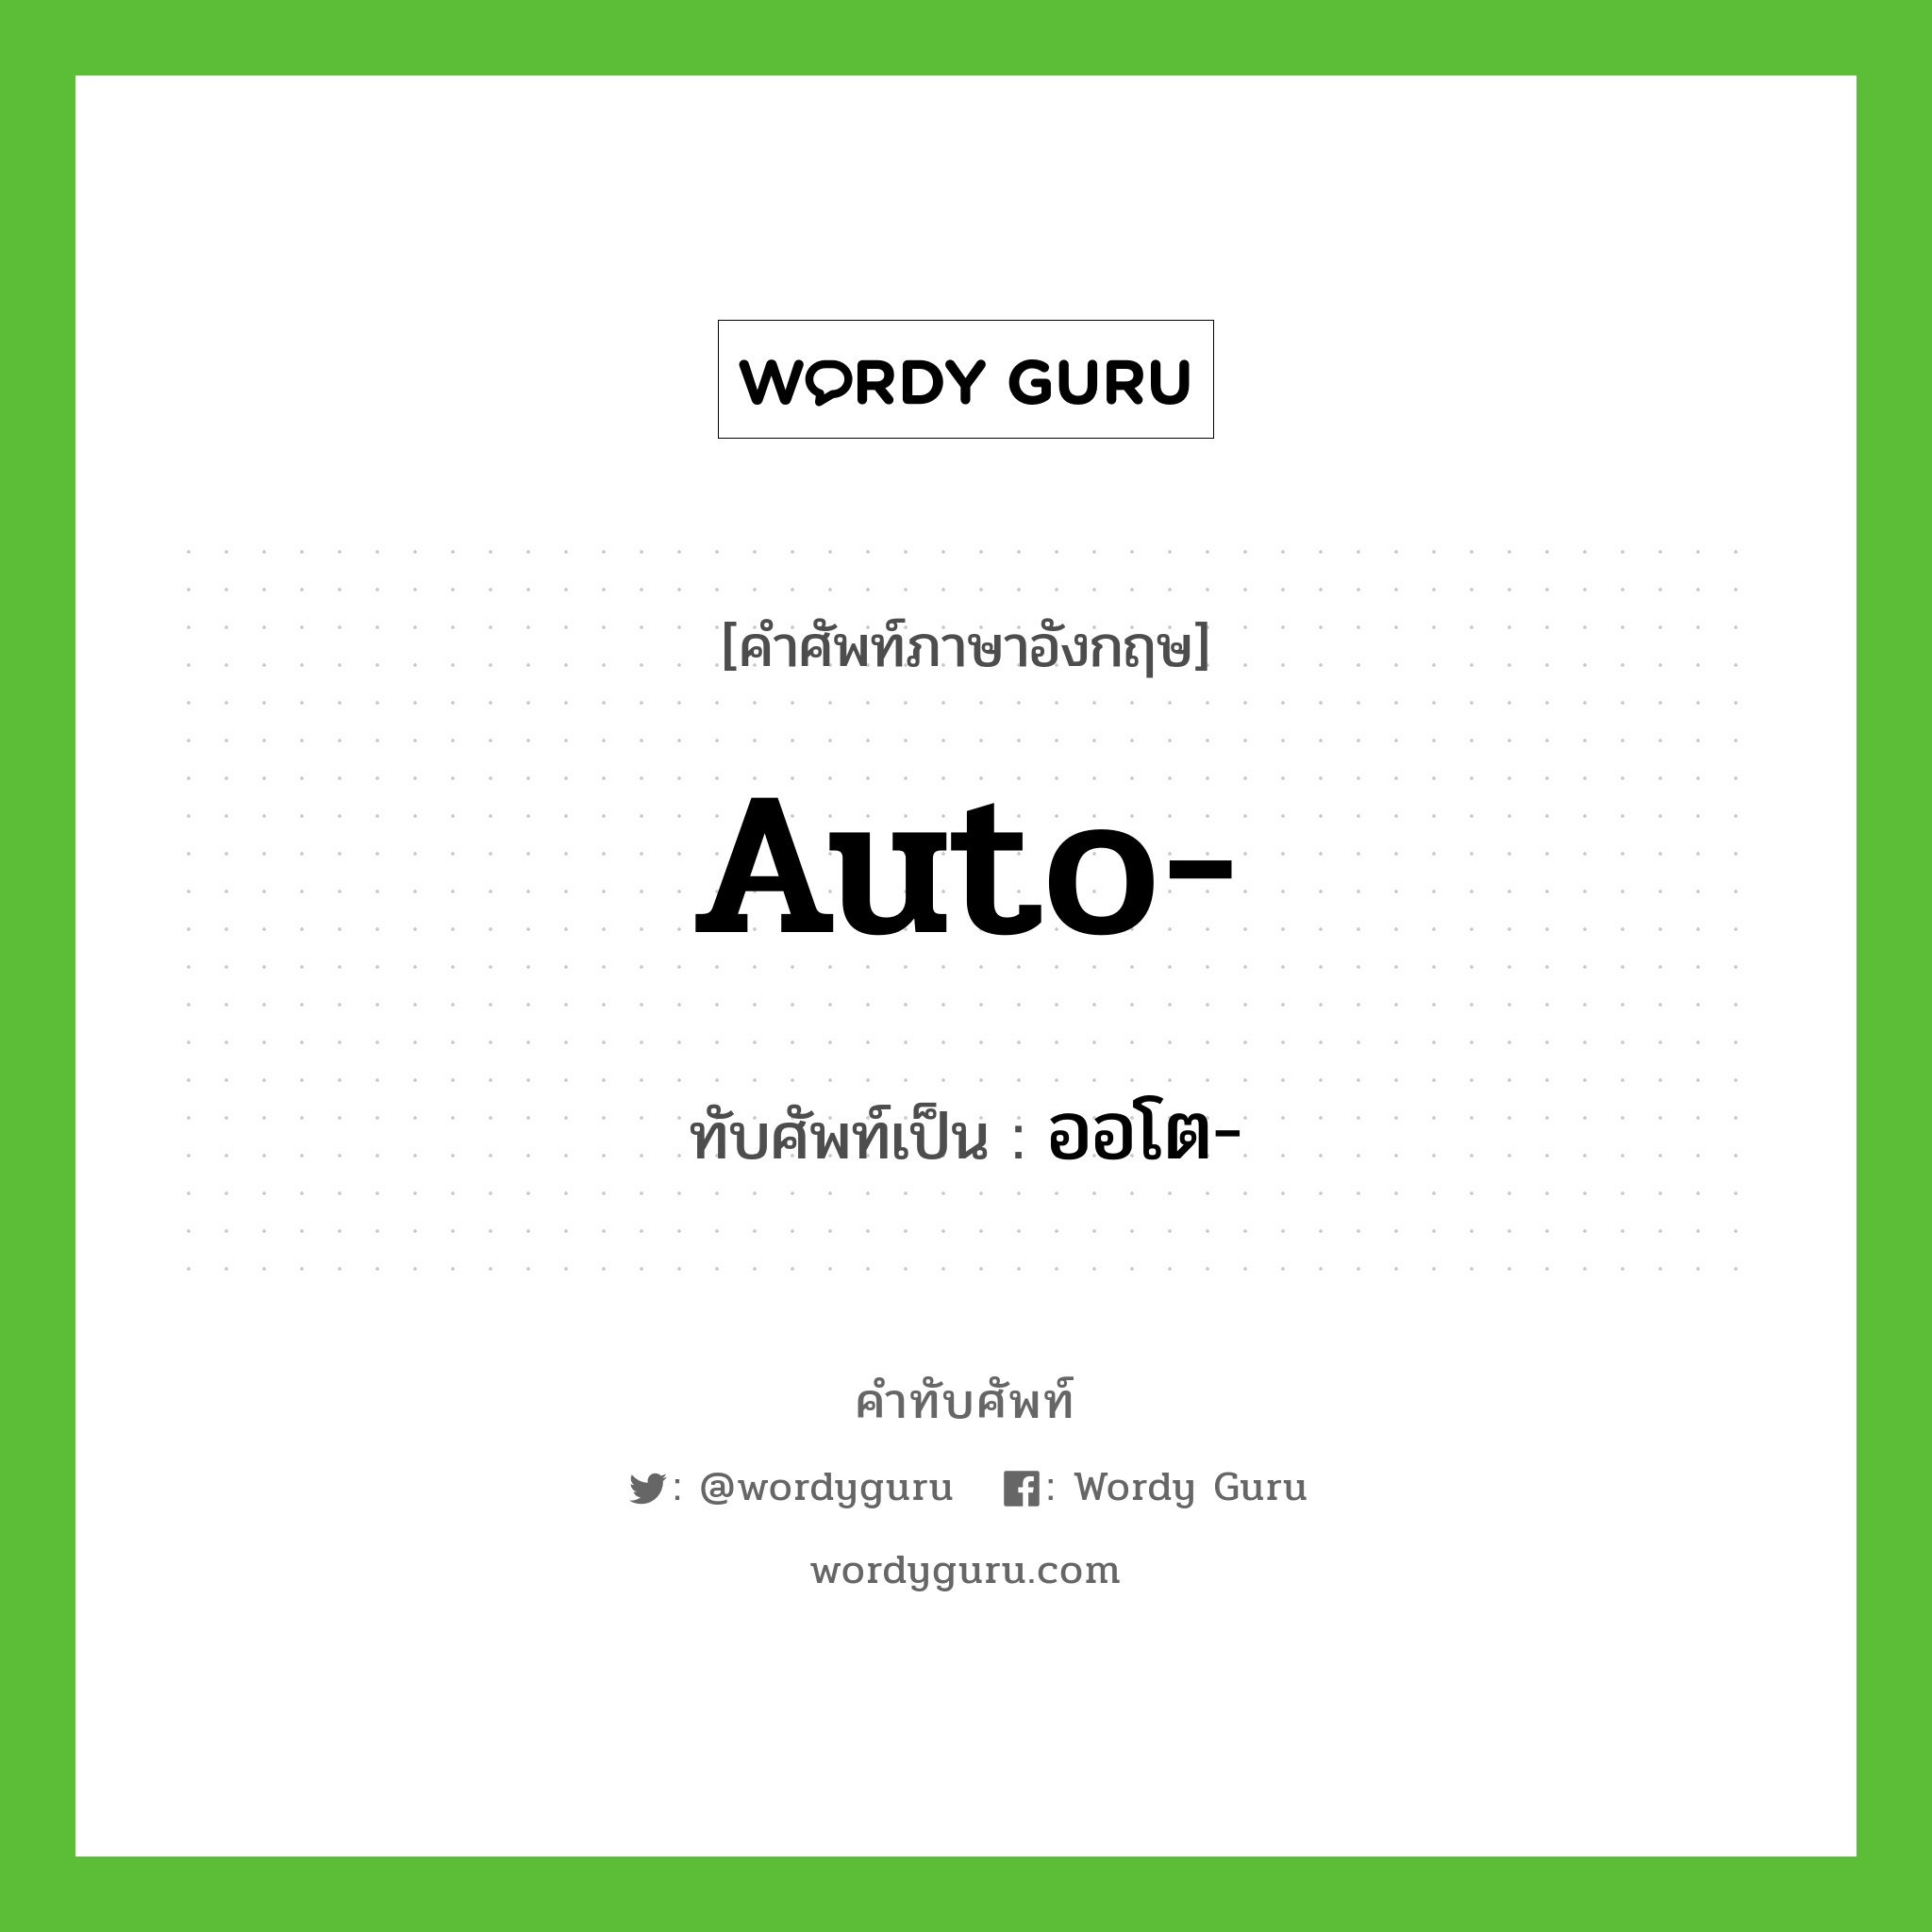 auto- เขียนเป็นคำไทยว่าอะไร?, คำศัพท์ภาษาอังกฤษ auto- ทับศัพท์เป็น ออโต-